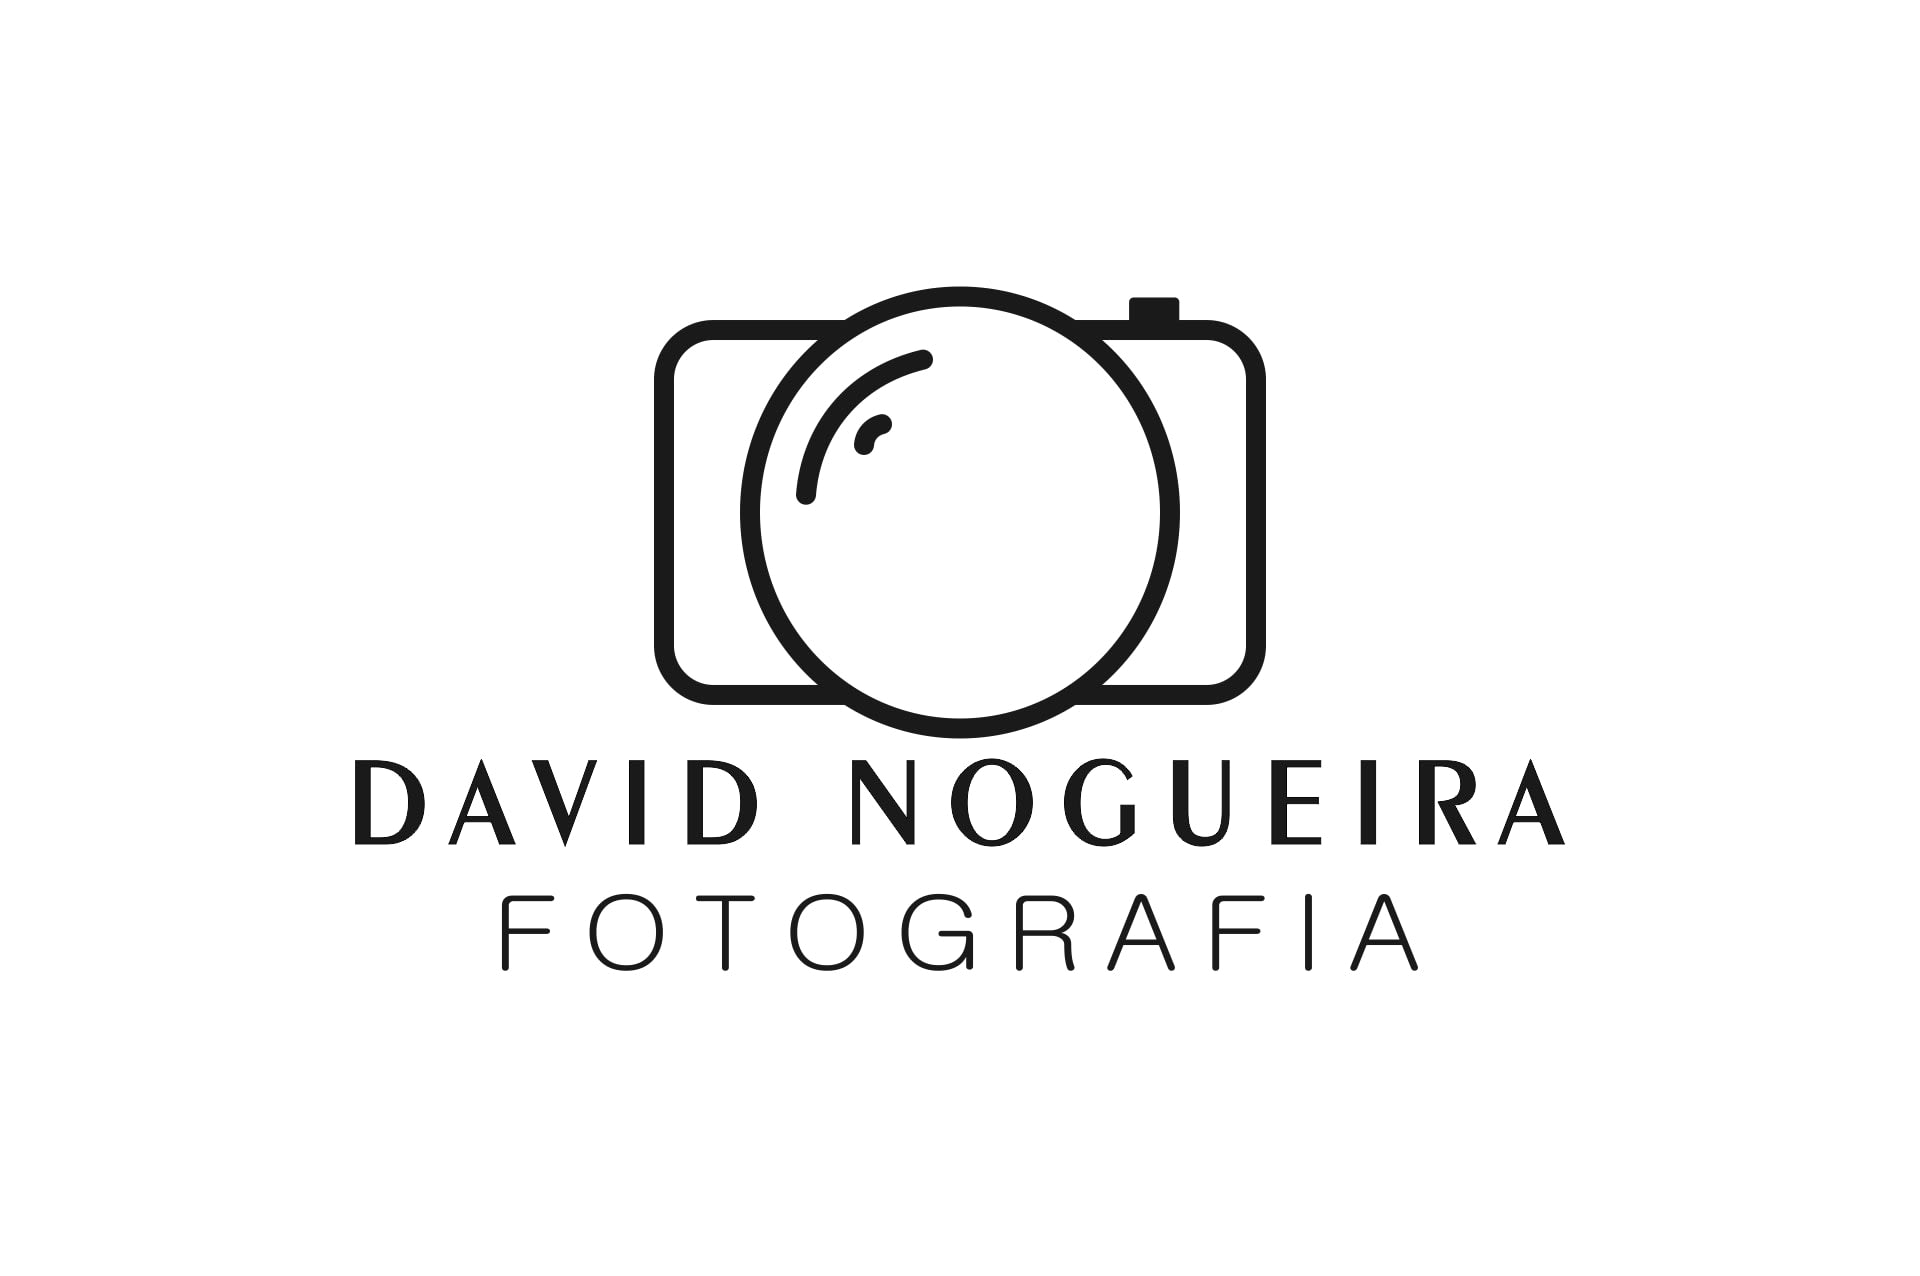 David Nogueira Fotografia